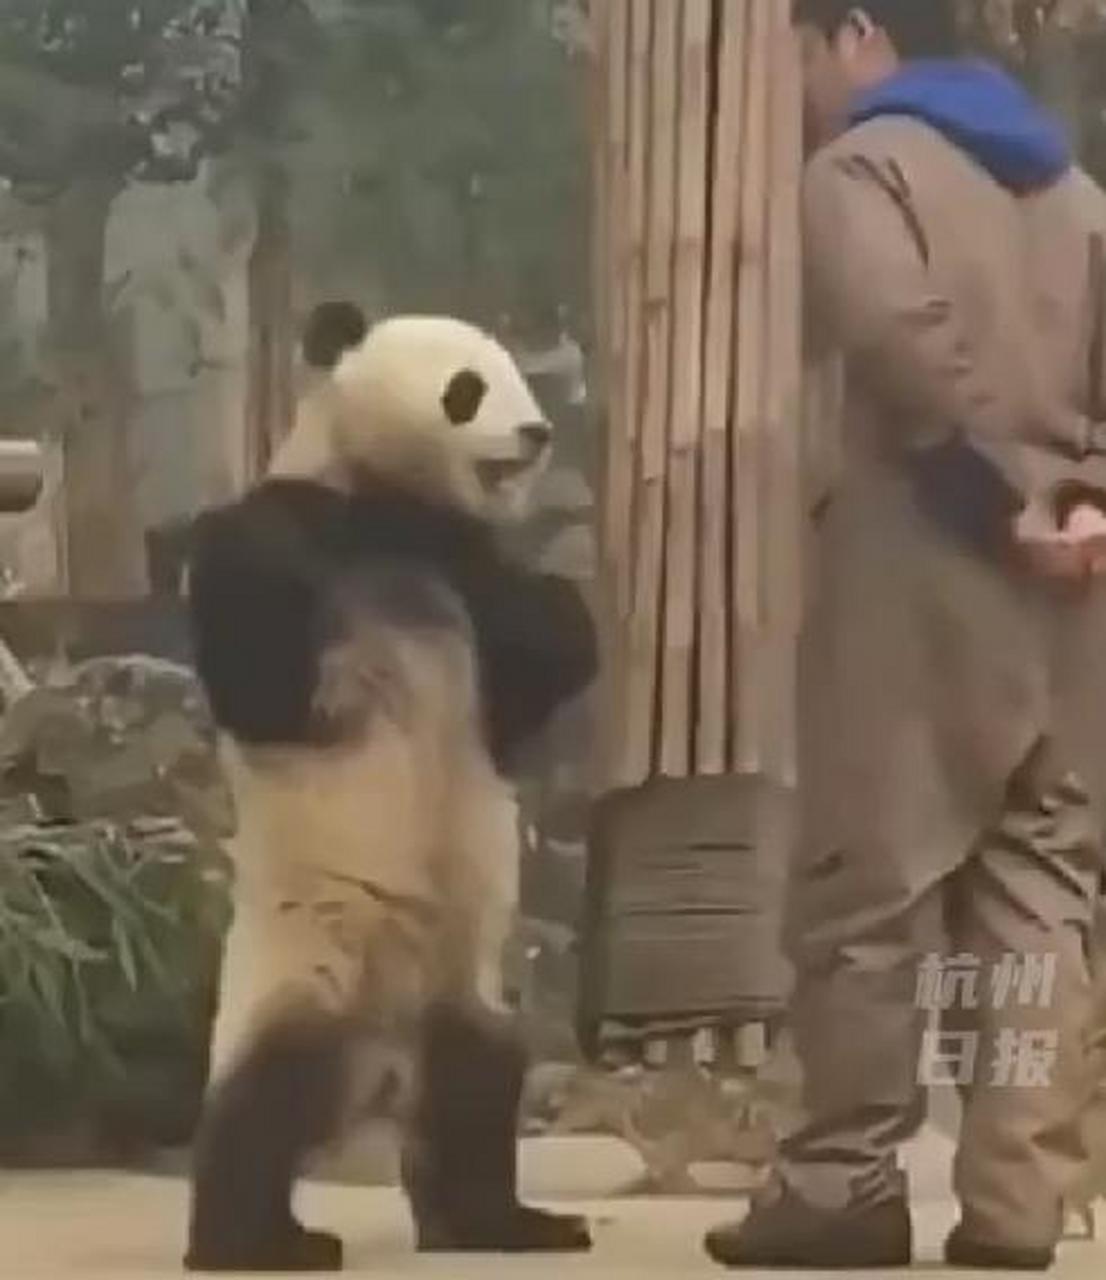 熊猫背手表情包图片